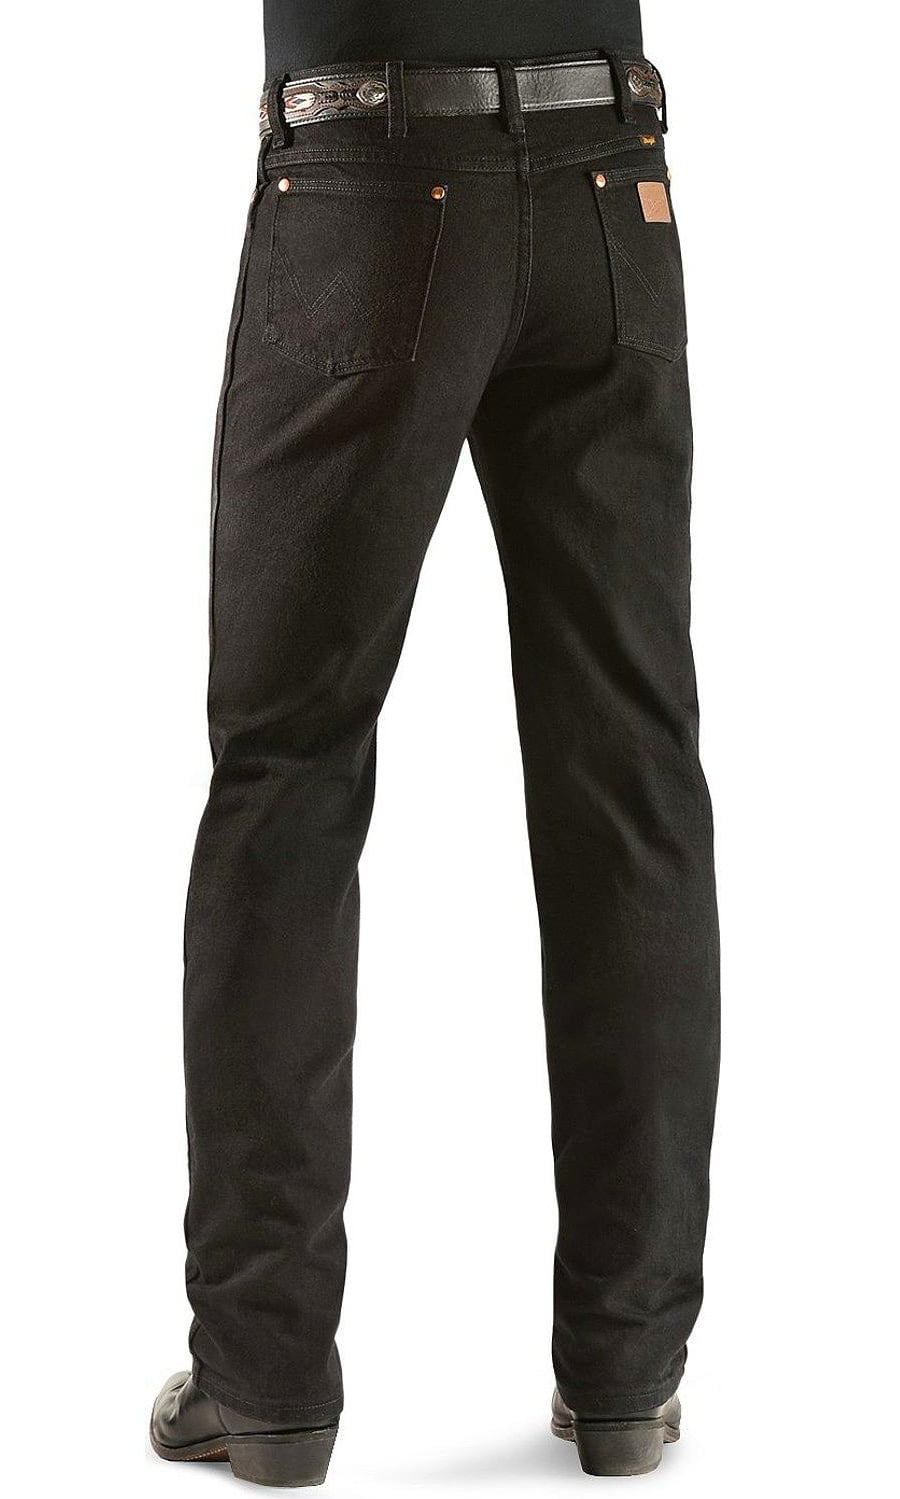 wrangler men's cowboy cut fit jean,shadow black,33x30 - Walmart.com